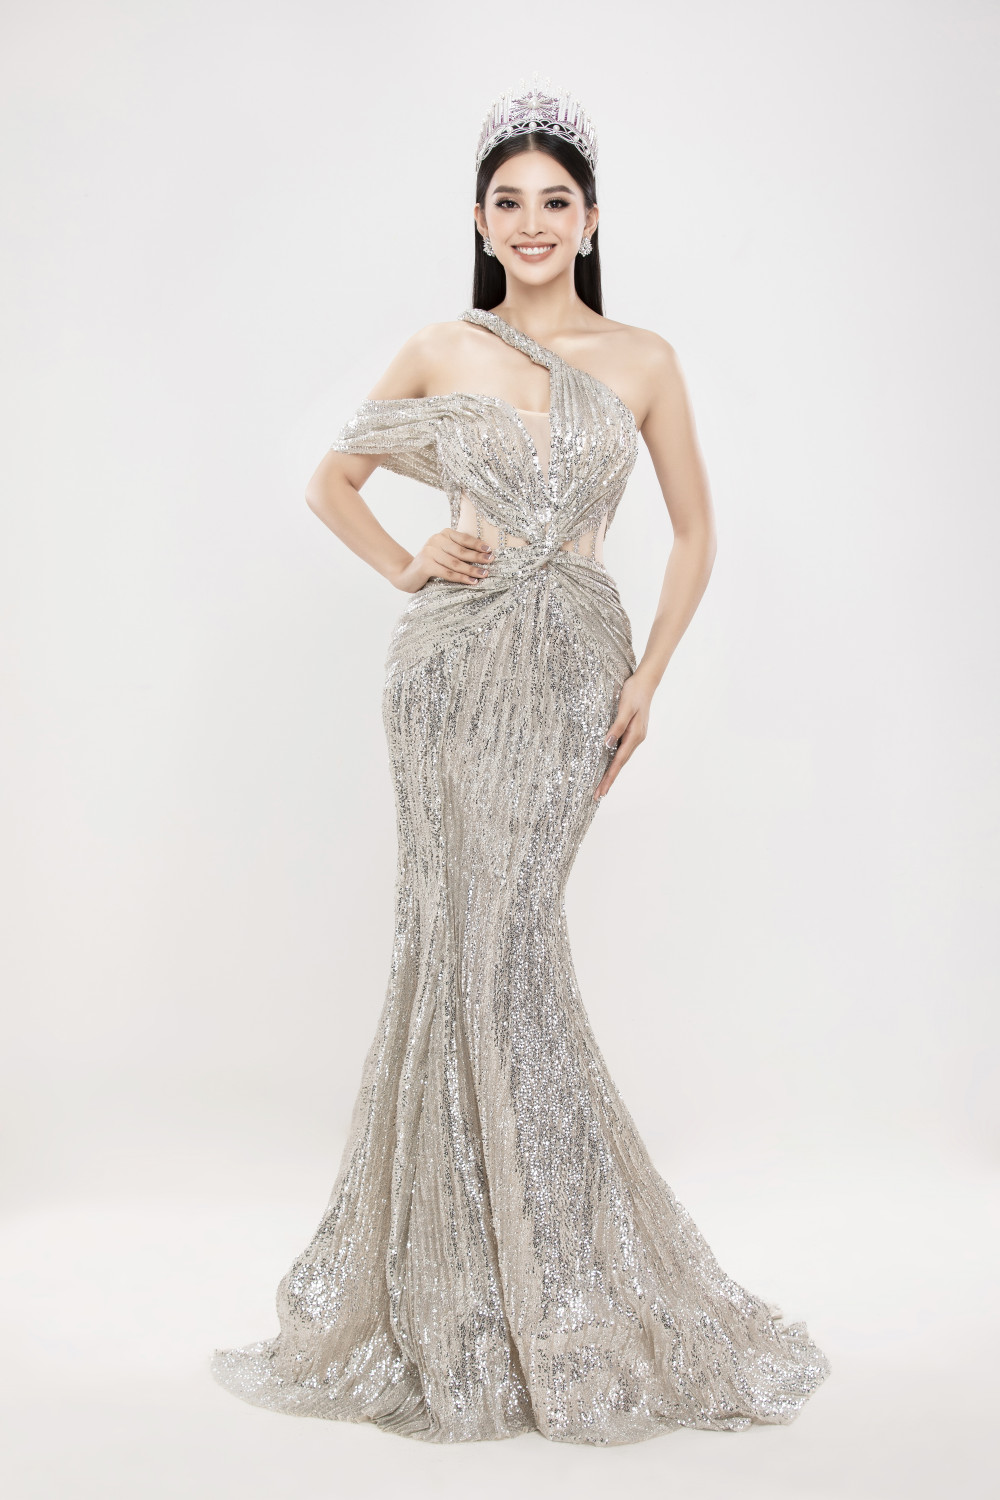 Sau 2 năm đăng quang, Tiểu Vy ngày càng trưởng thành hơn với sắc vóc quyến rũ. Hoa hậu Việt Nam 2018 vẫn nhận nhiều lời khen cho gương mặt cân đối, dễ tạo thiện cảm.